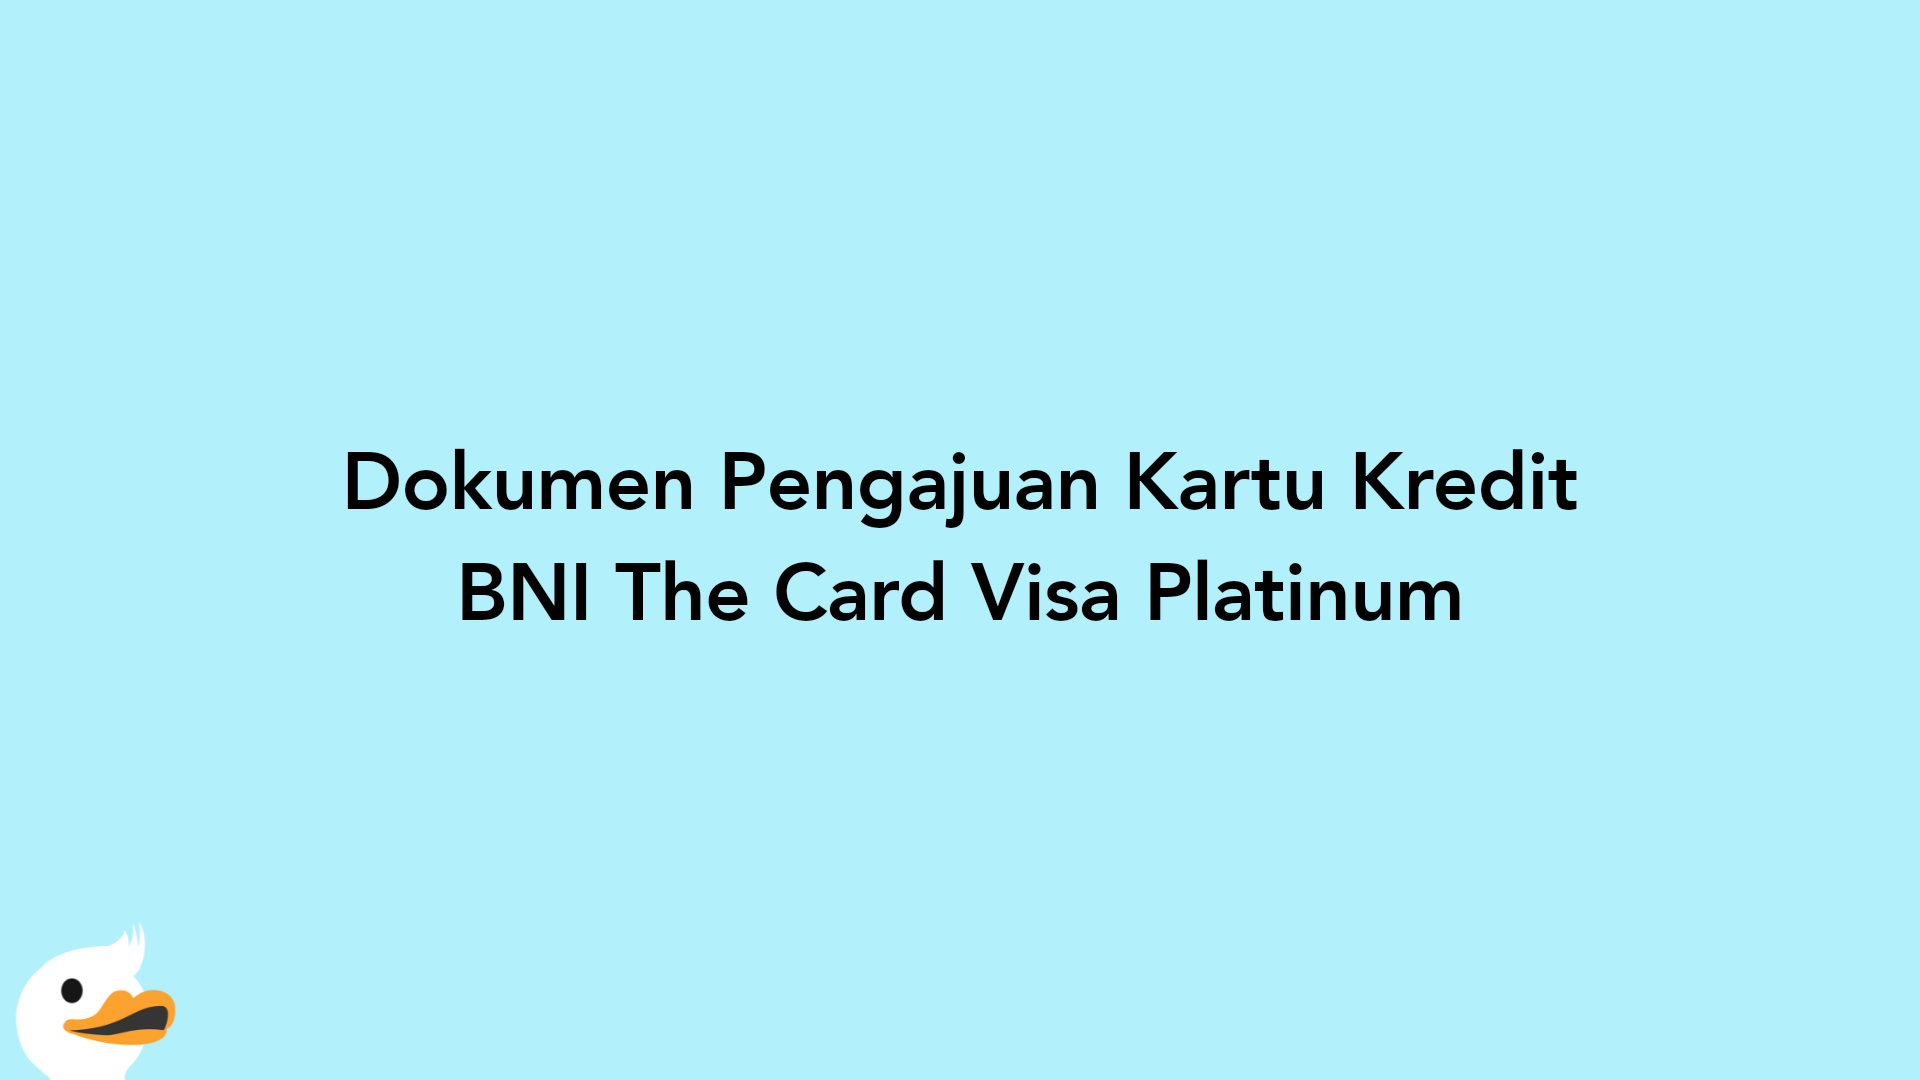 Dokumen Pengajuan Kartu Kredit BNI The Card Visa Platinum